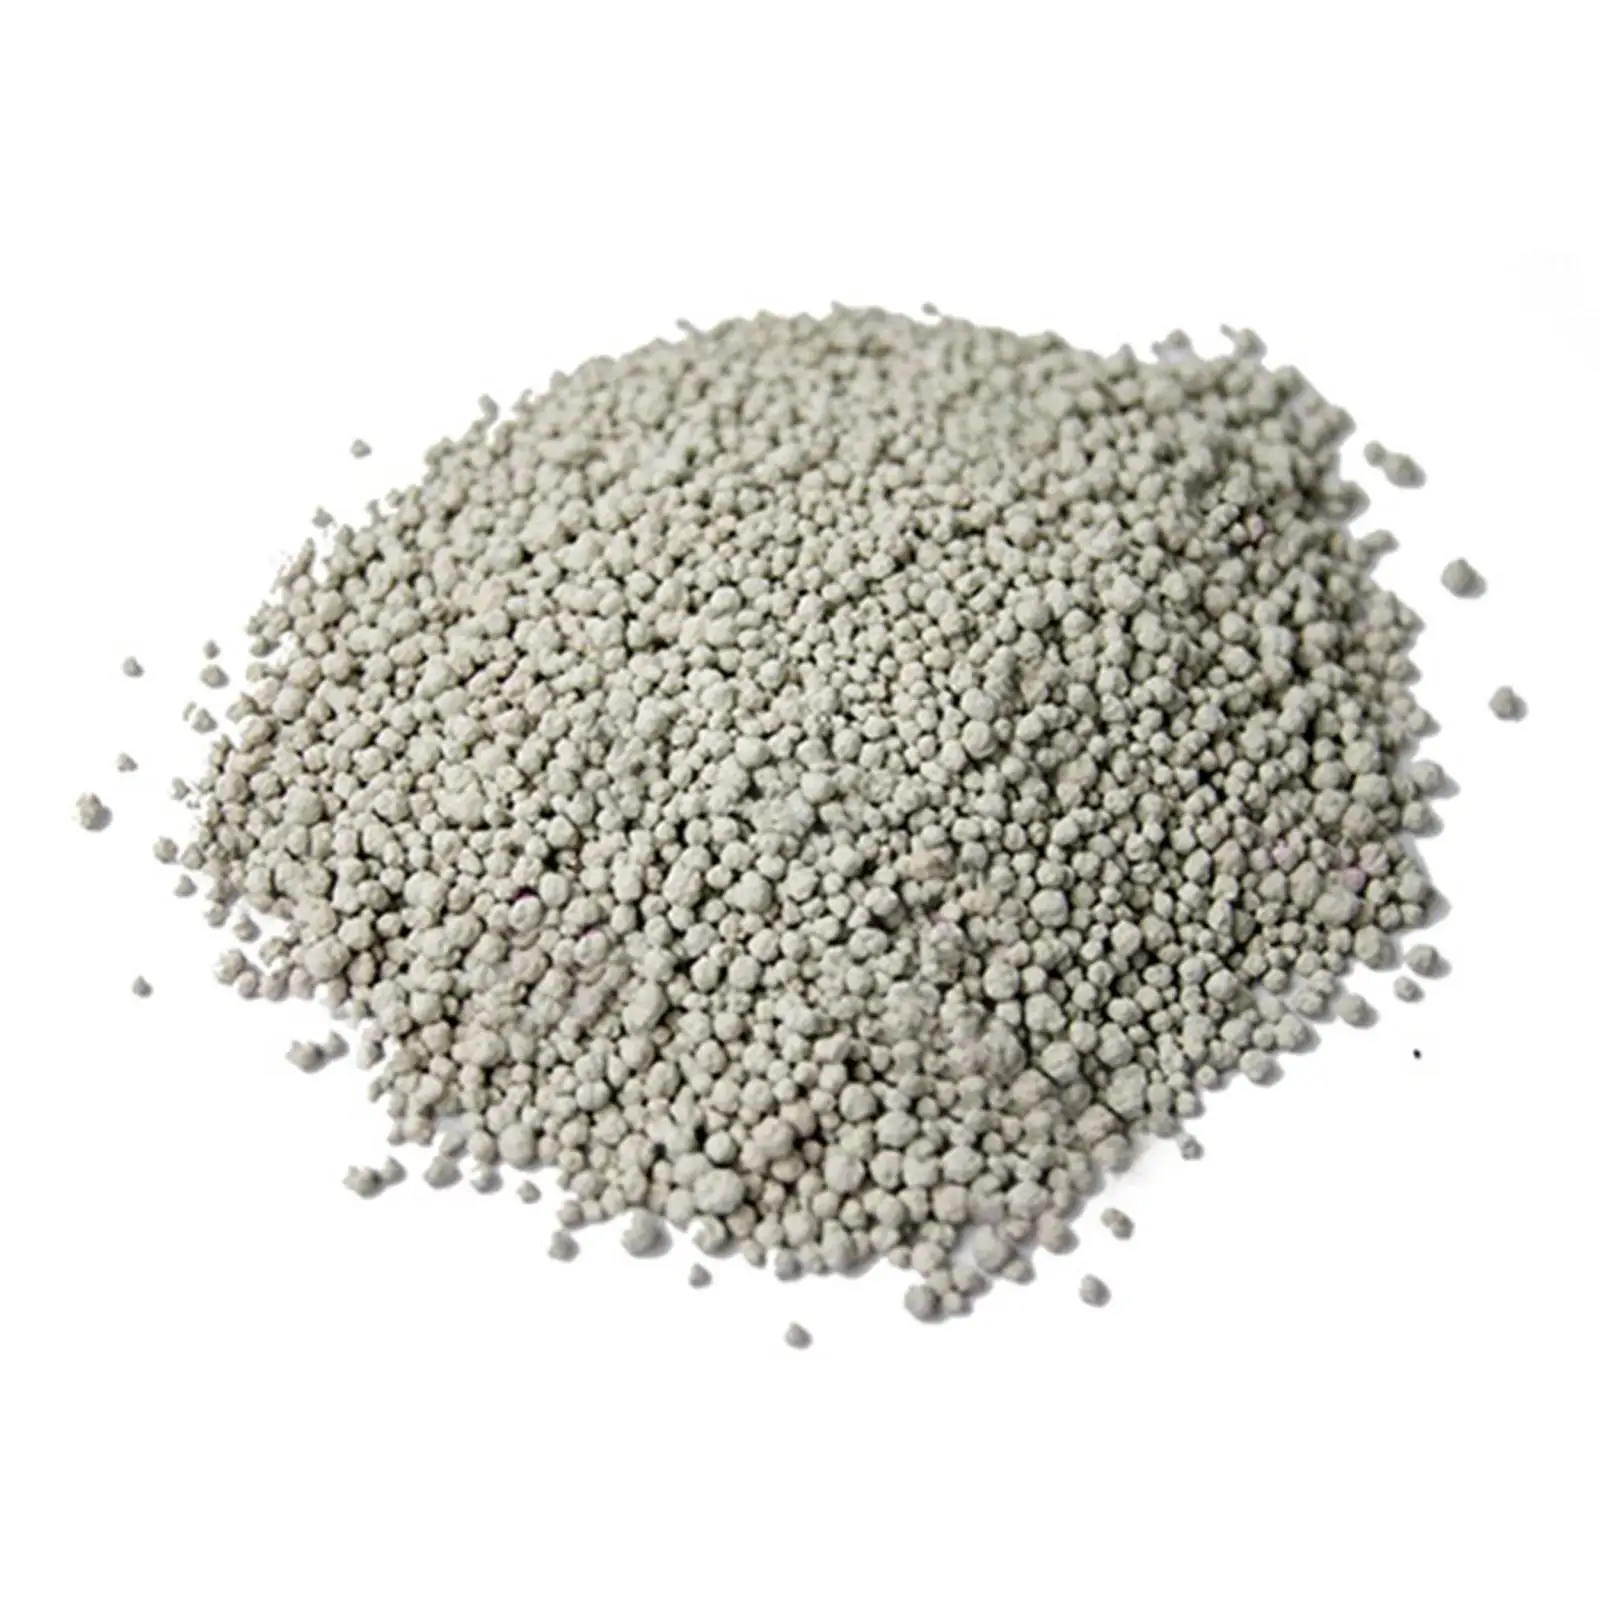 Single Super Phosphate Agricultural Fertilizer Powdered Granular ...